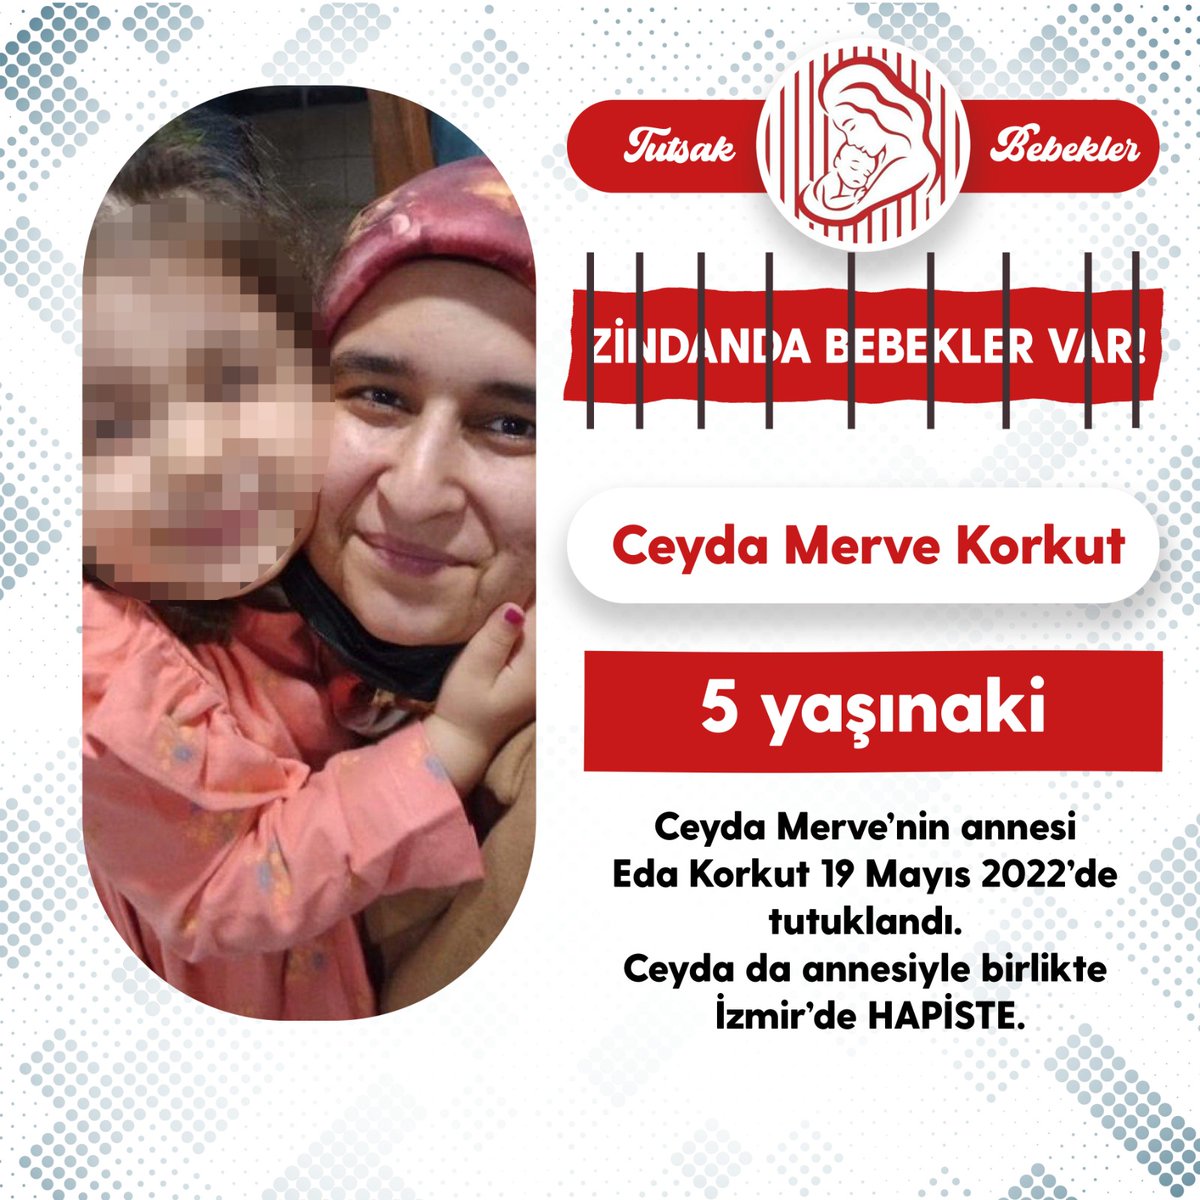 Ceyda Merve'nin annesi Eda Korkut 19 Mayıs 2022'de tutuklandı. Ceyda da annesiyle birlikte İzmir'de Hapiste... Küçücük çocuklar yıllardır cezaevinin soğuk koğuşlarında da yaşıyorlar.. @adalet_bakanlik @Cemrebirand1 TutsakÇocukların 23Nisanı #23Nisan Djiku Mustafa Kemal Atatürk